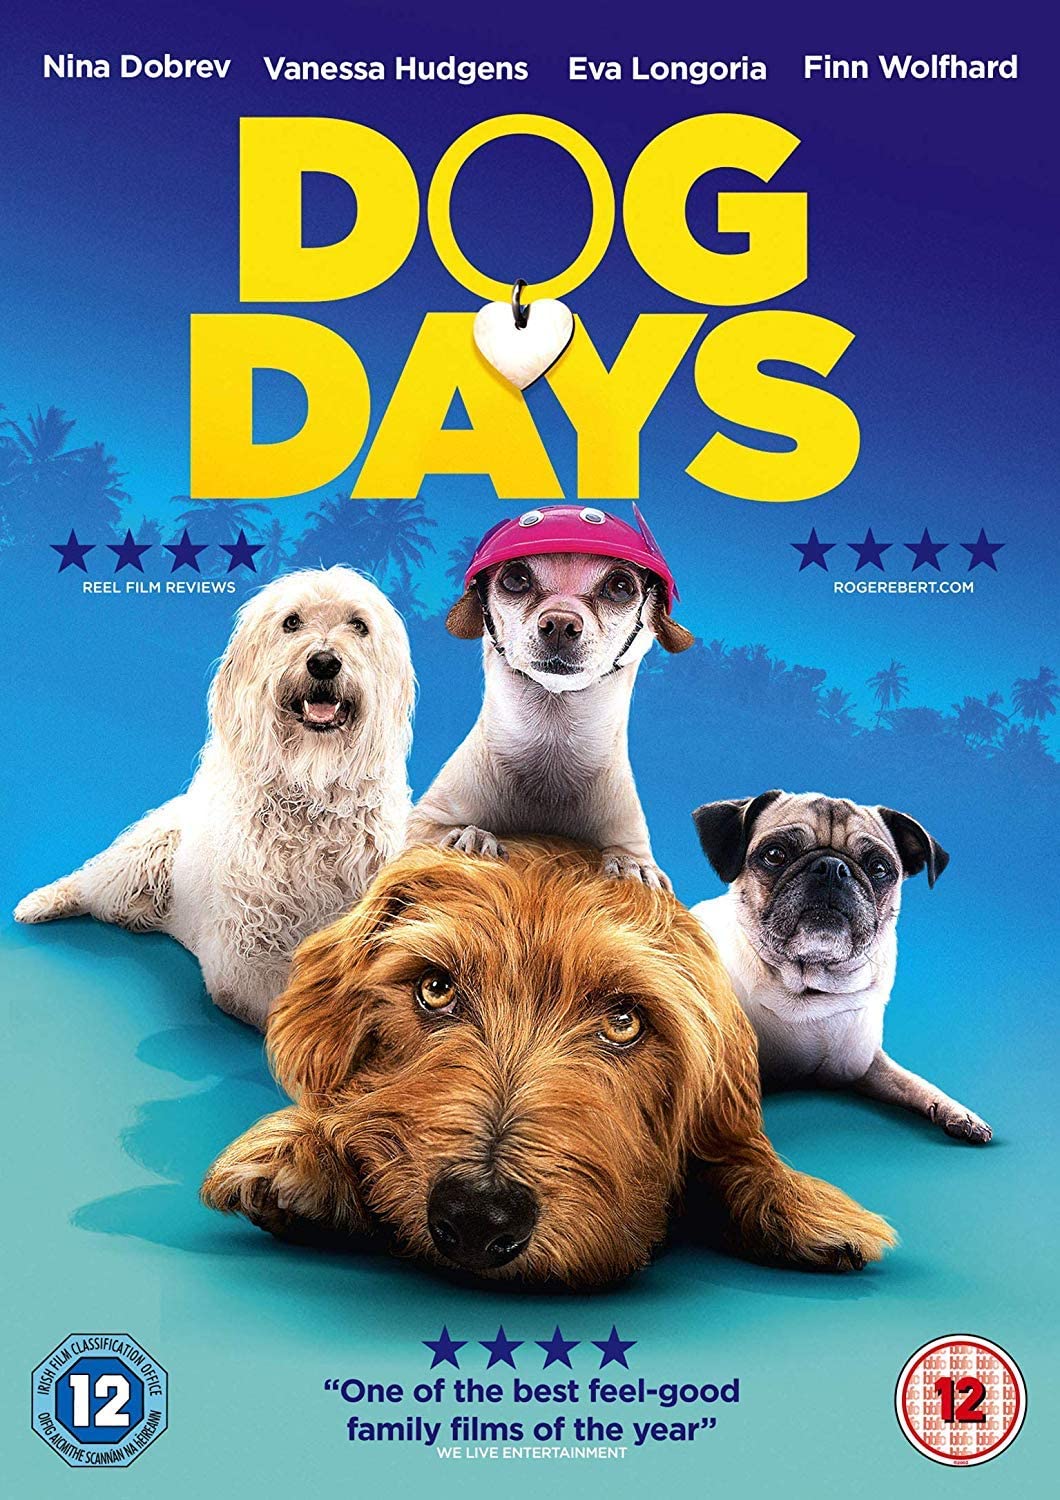 Dog Days - Drama/Rom-com [DVD]